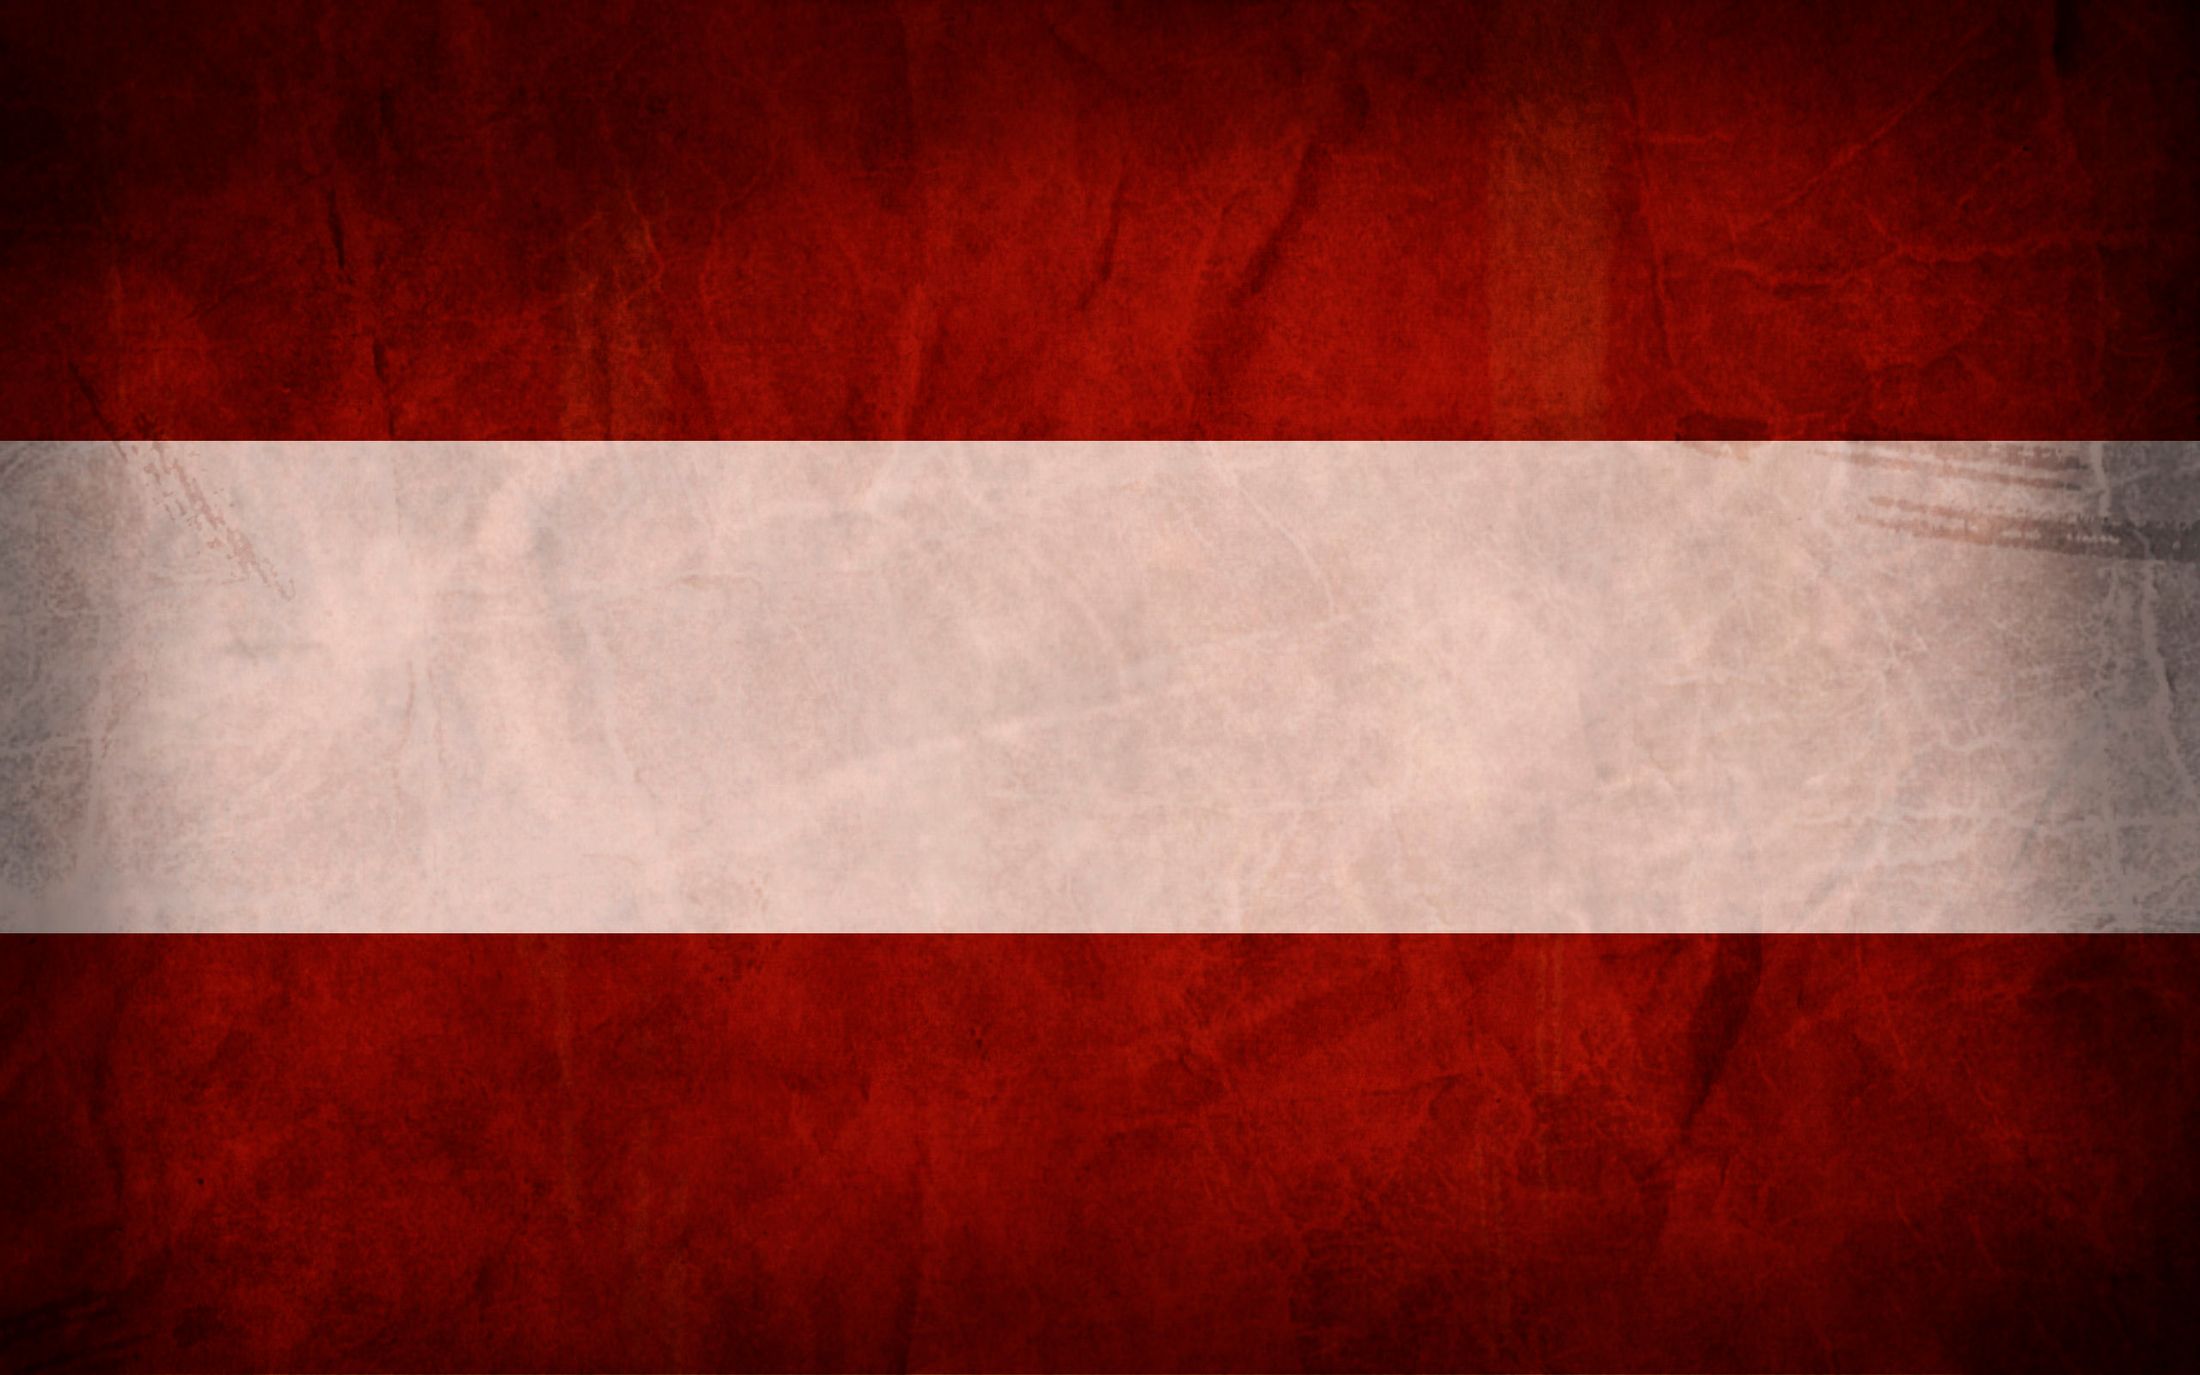 флаг австрии картинки